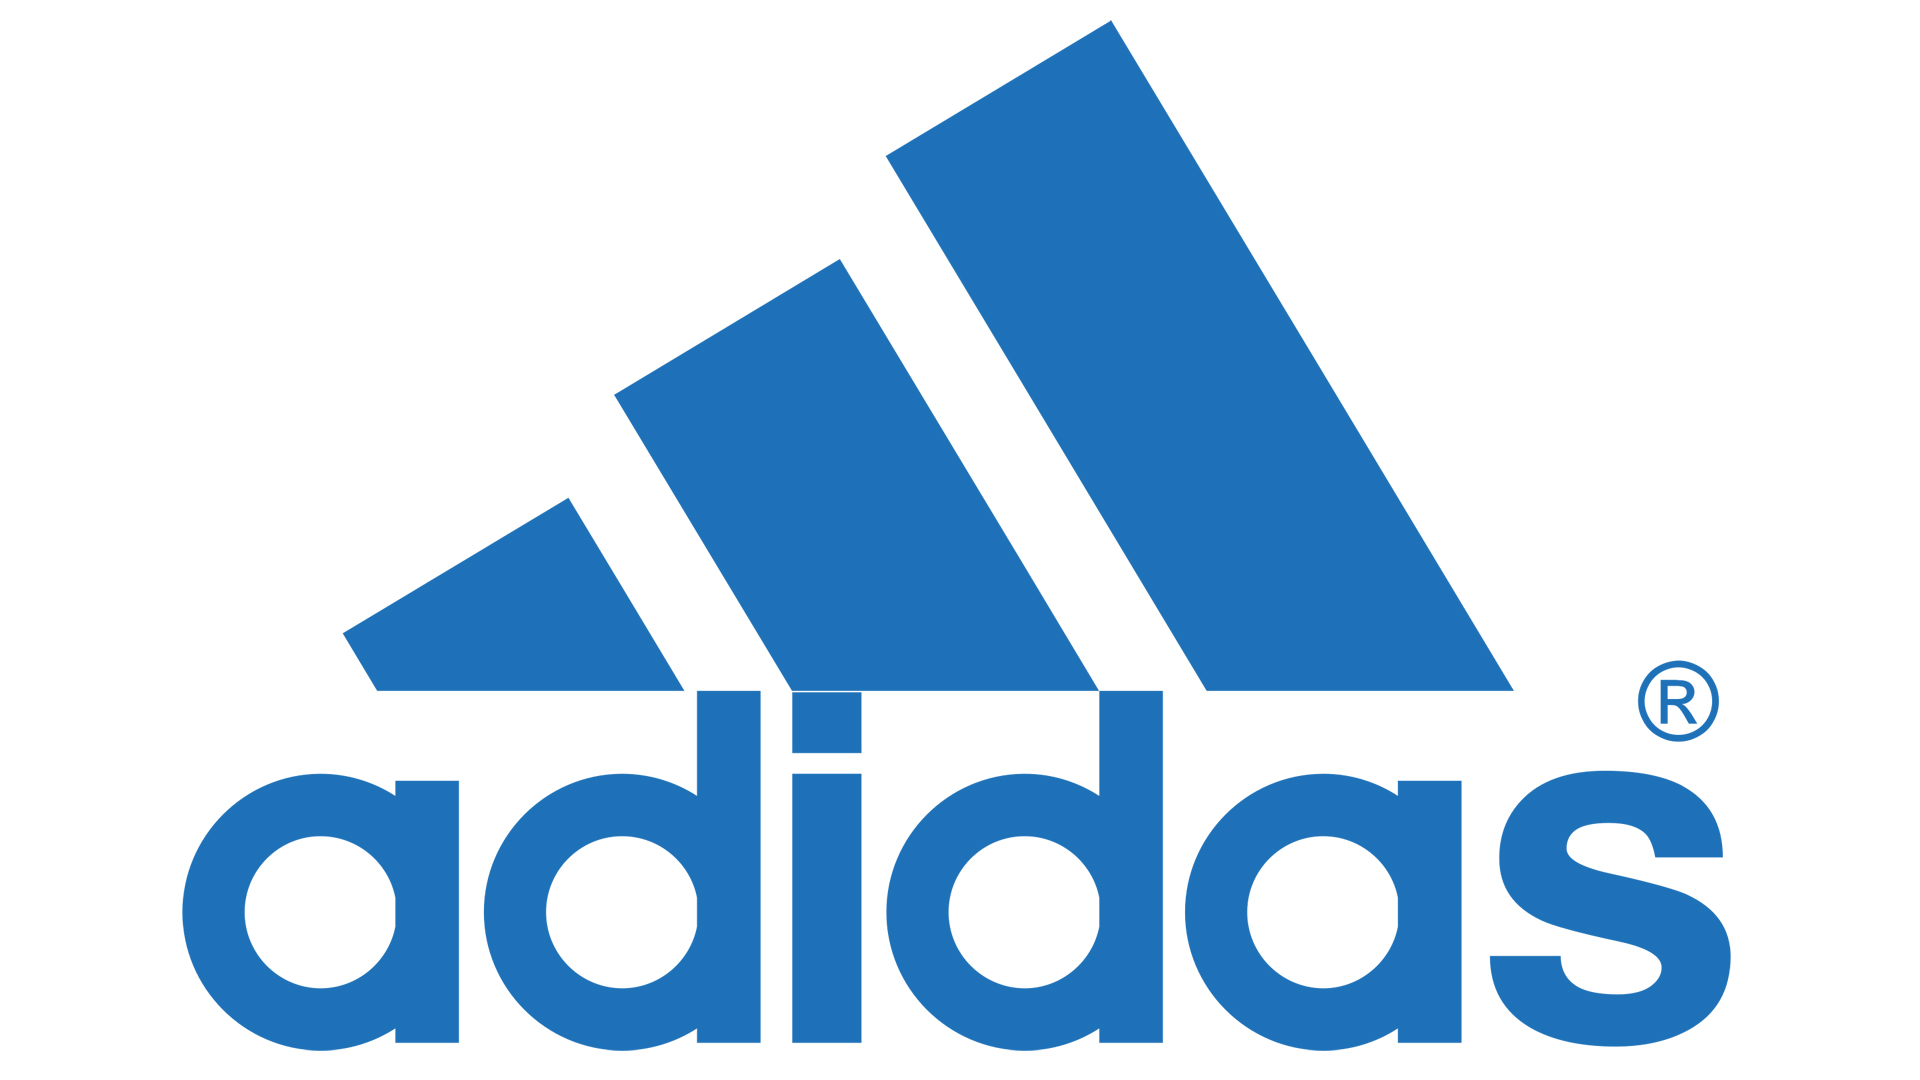 adidas colour logo